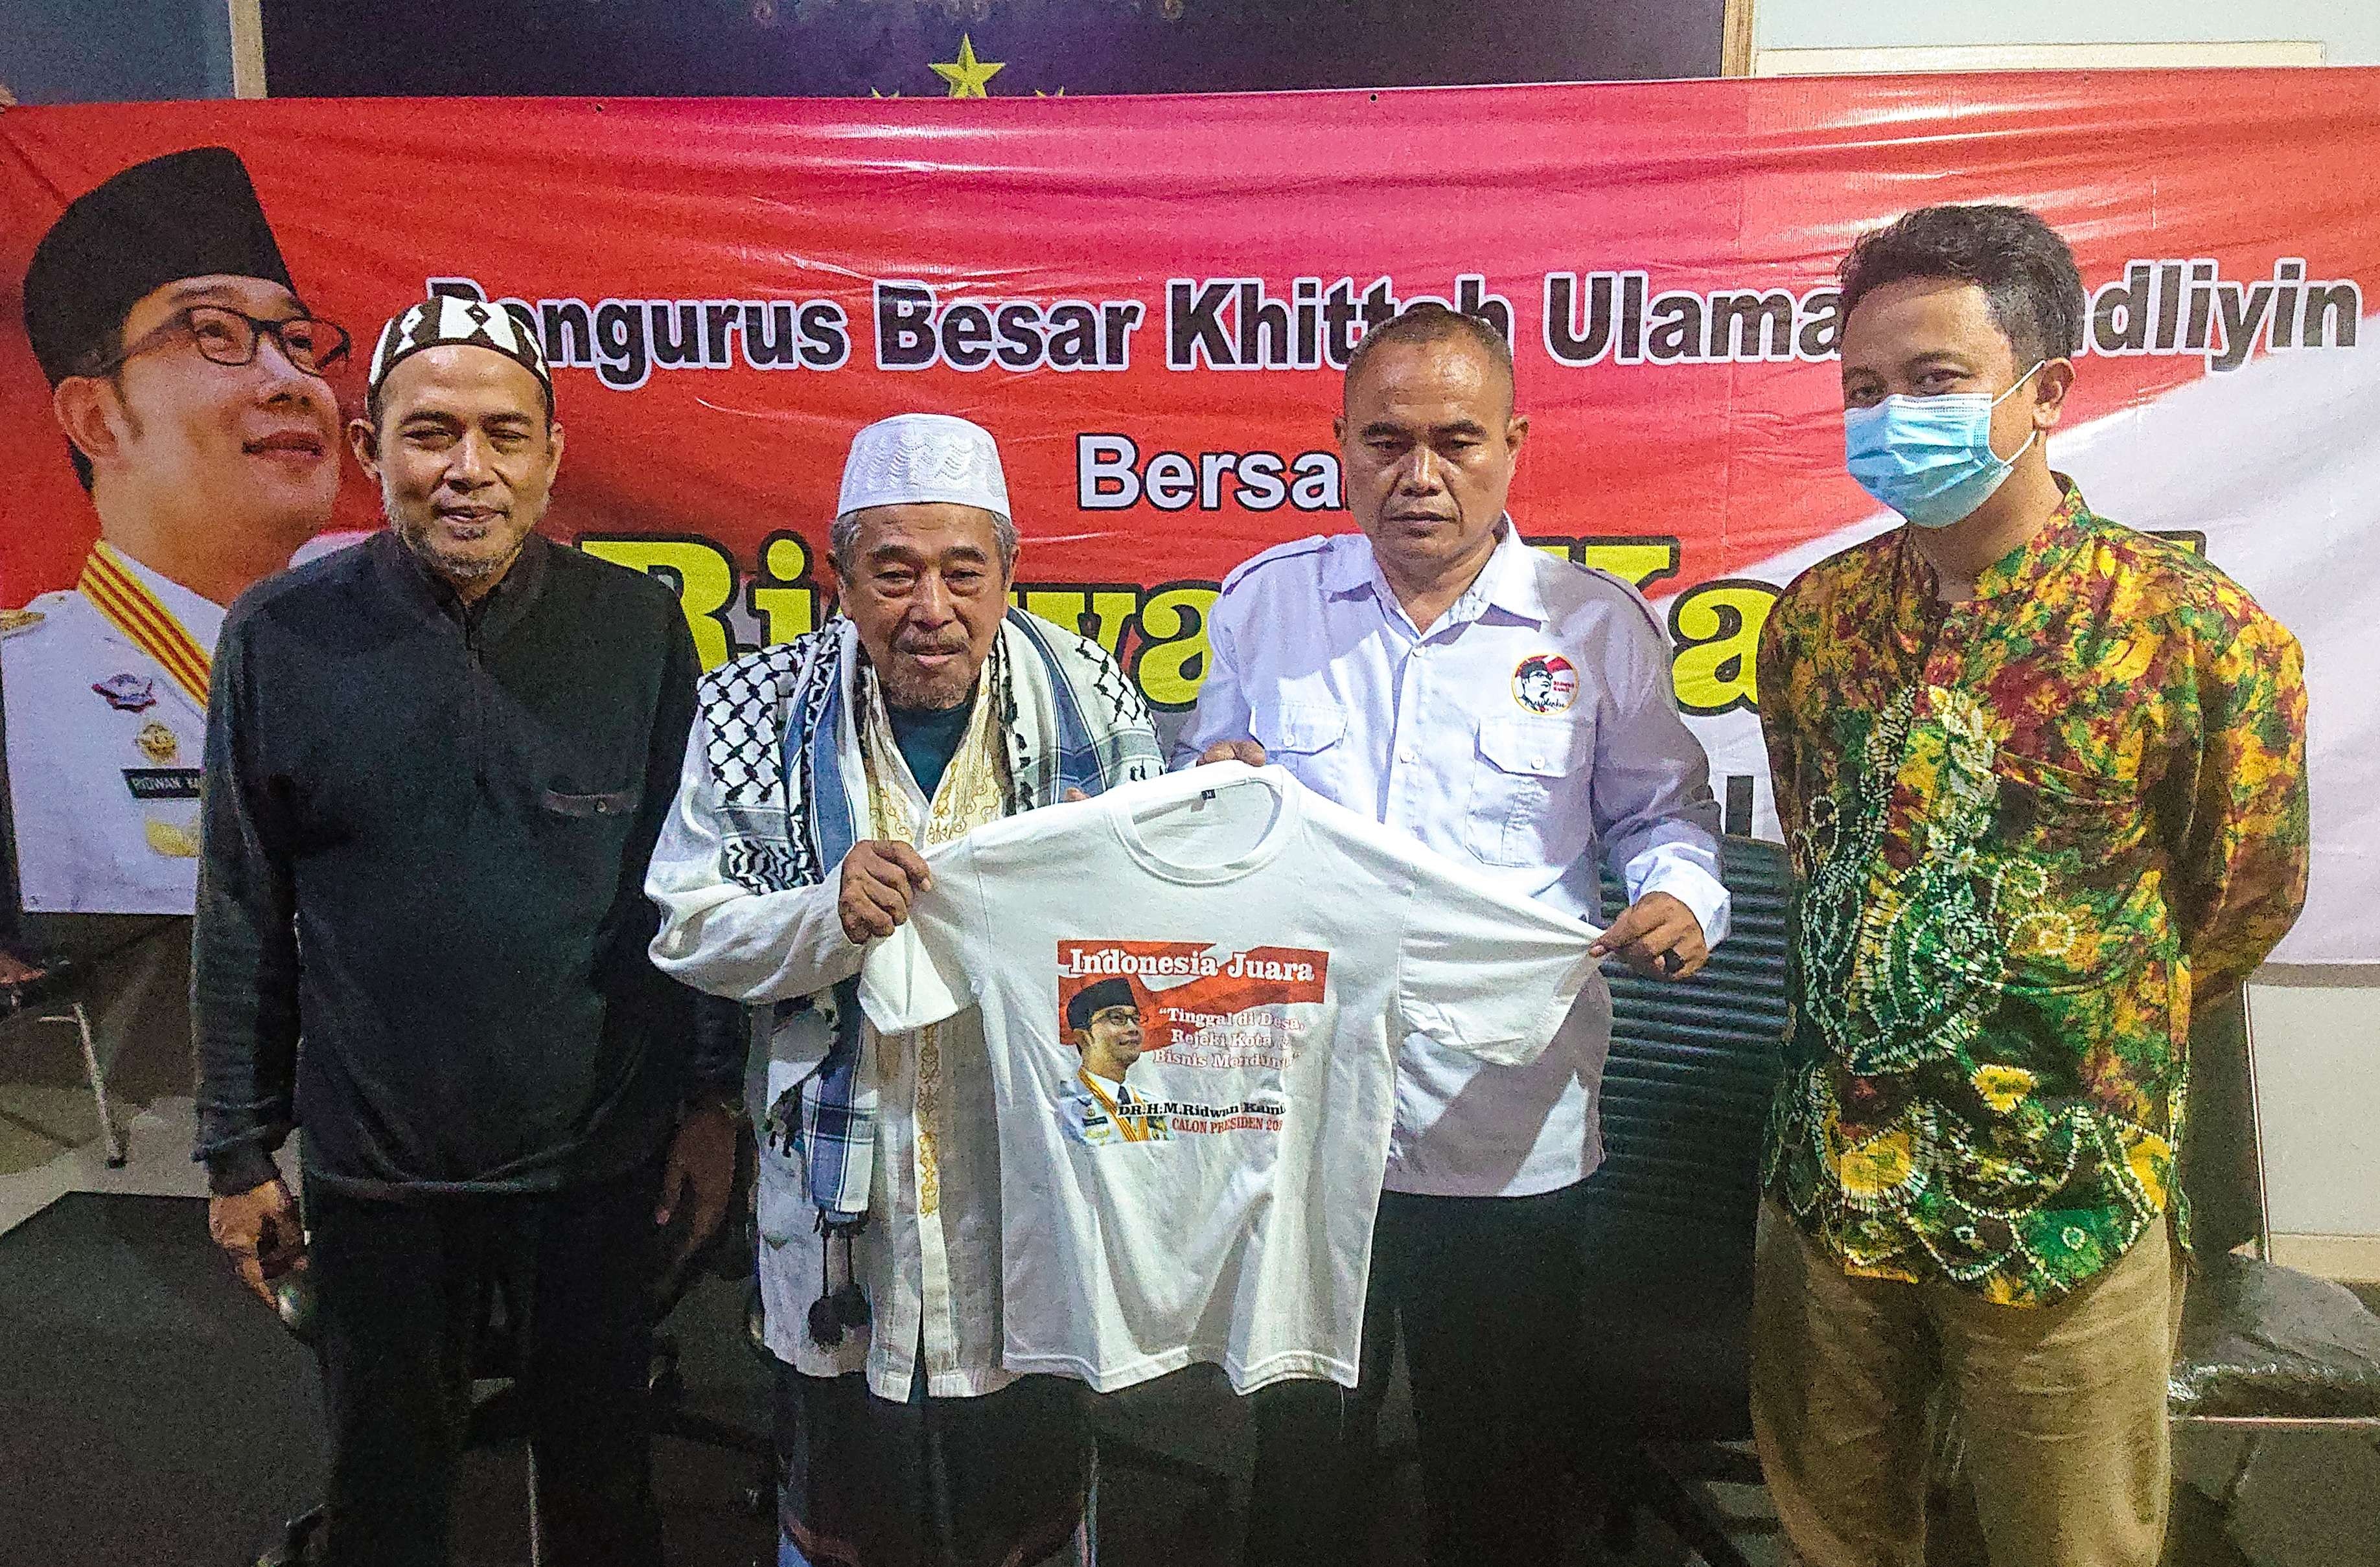 Simbolis penyerahan kaos dan PIN Ridwan Kamil kepada ulama di Jawa Timur, Jumat 27 Mei 2022. (Foto: Aini Arifin/Ngopibareng.id)